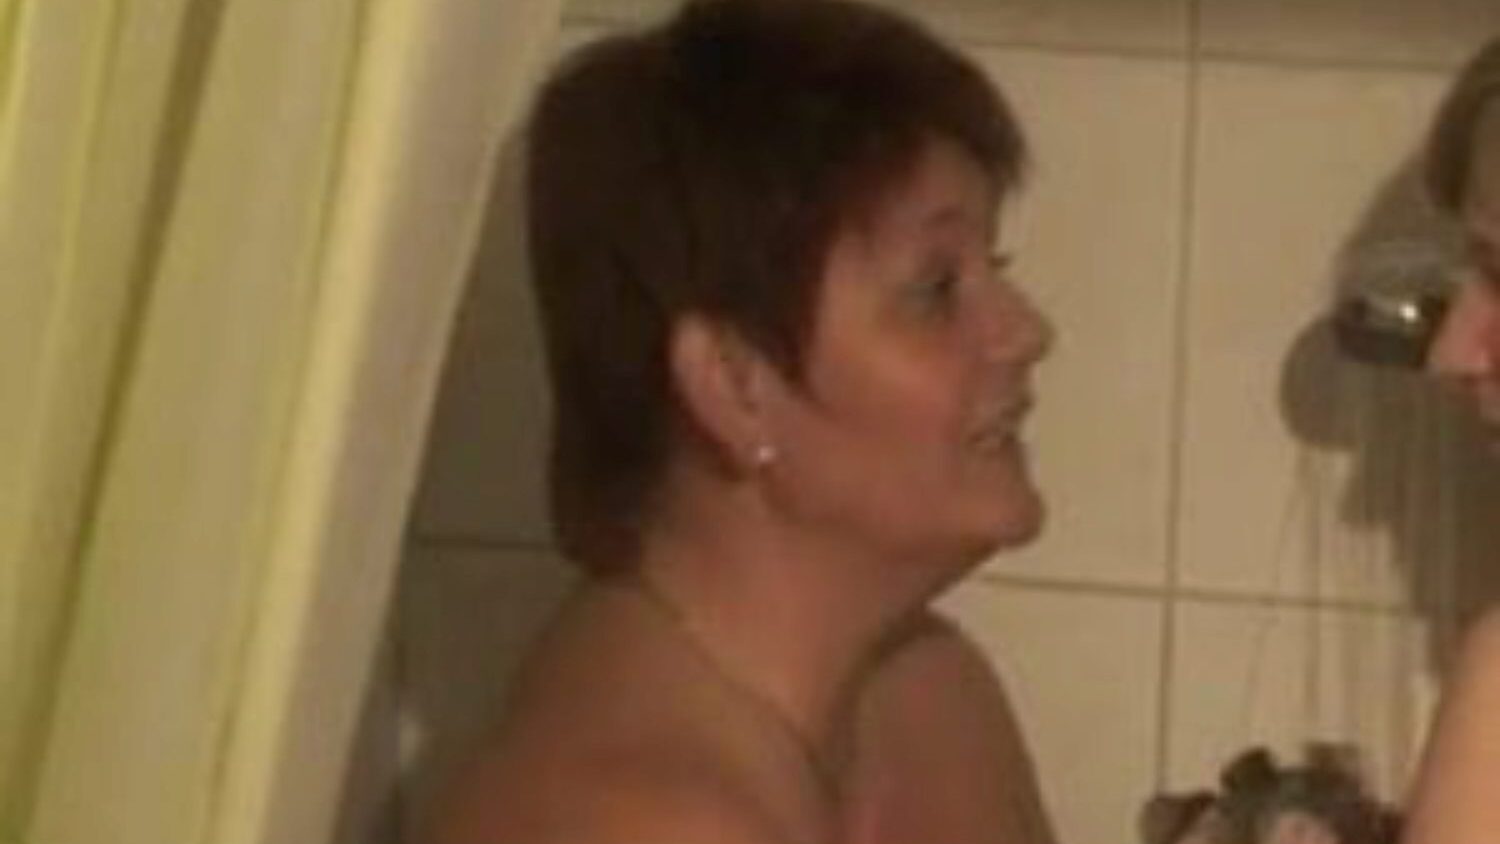 două bi-fete duș: video porno lesbiene gratuite 76 - xhamster urmărește 2 bi-fete duș tub dublu scena filmului de dragoste gratuit pentru toți pe xhamster, cu colecția dominatoare de lesbiene germane, mamă aș dori să-mi trag dracului și pornografie bbw secvențe de film